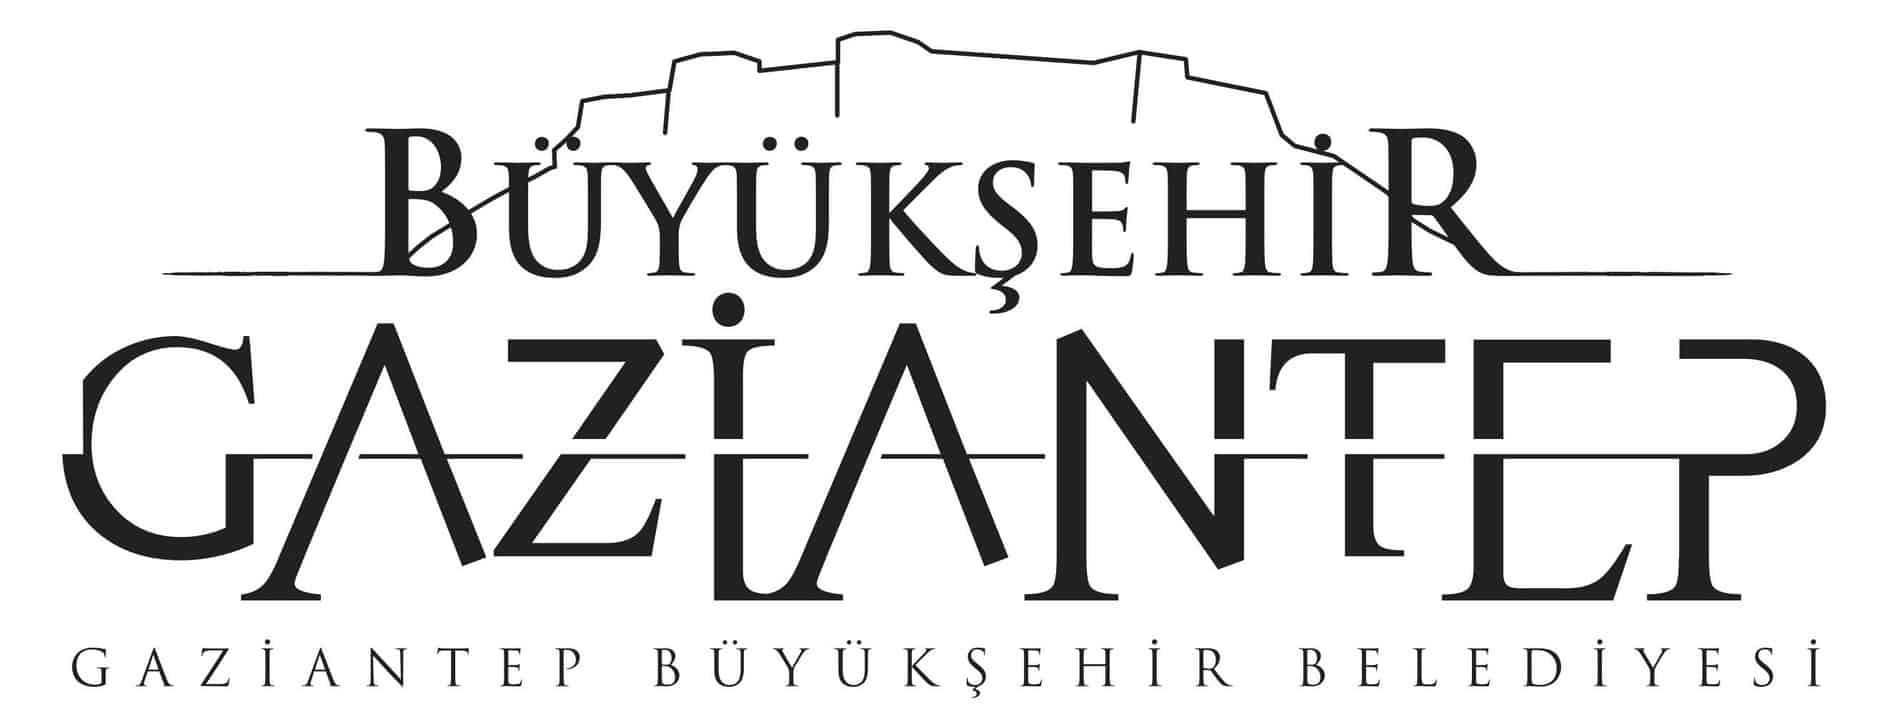 gaziantep buyuksehir belediyesi logo